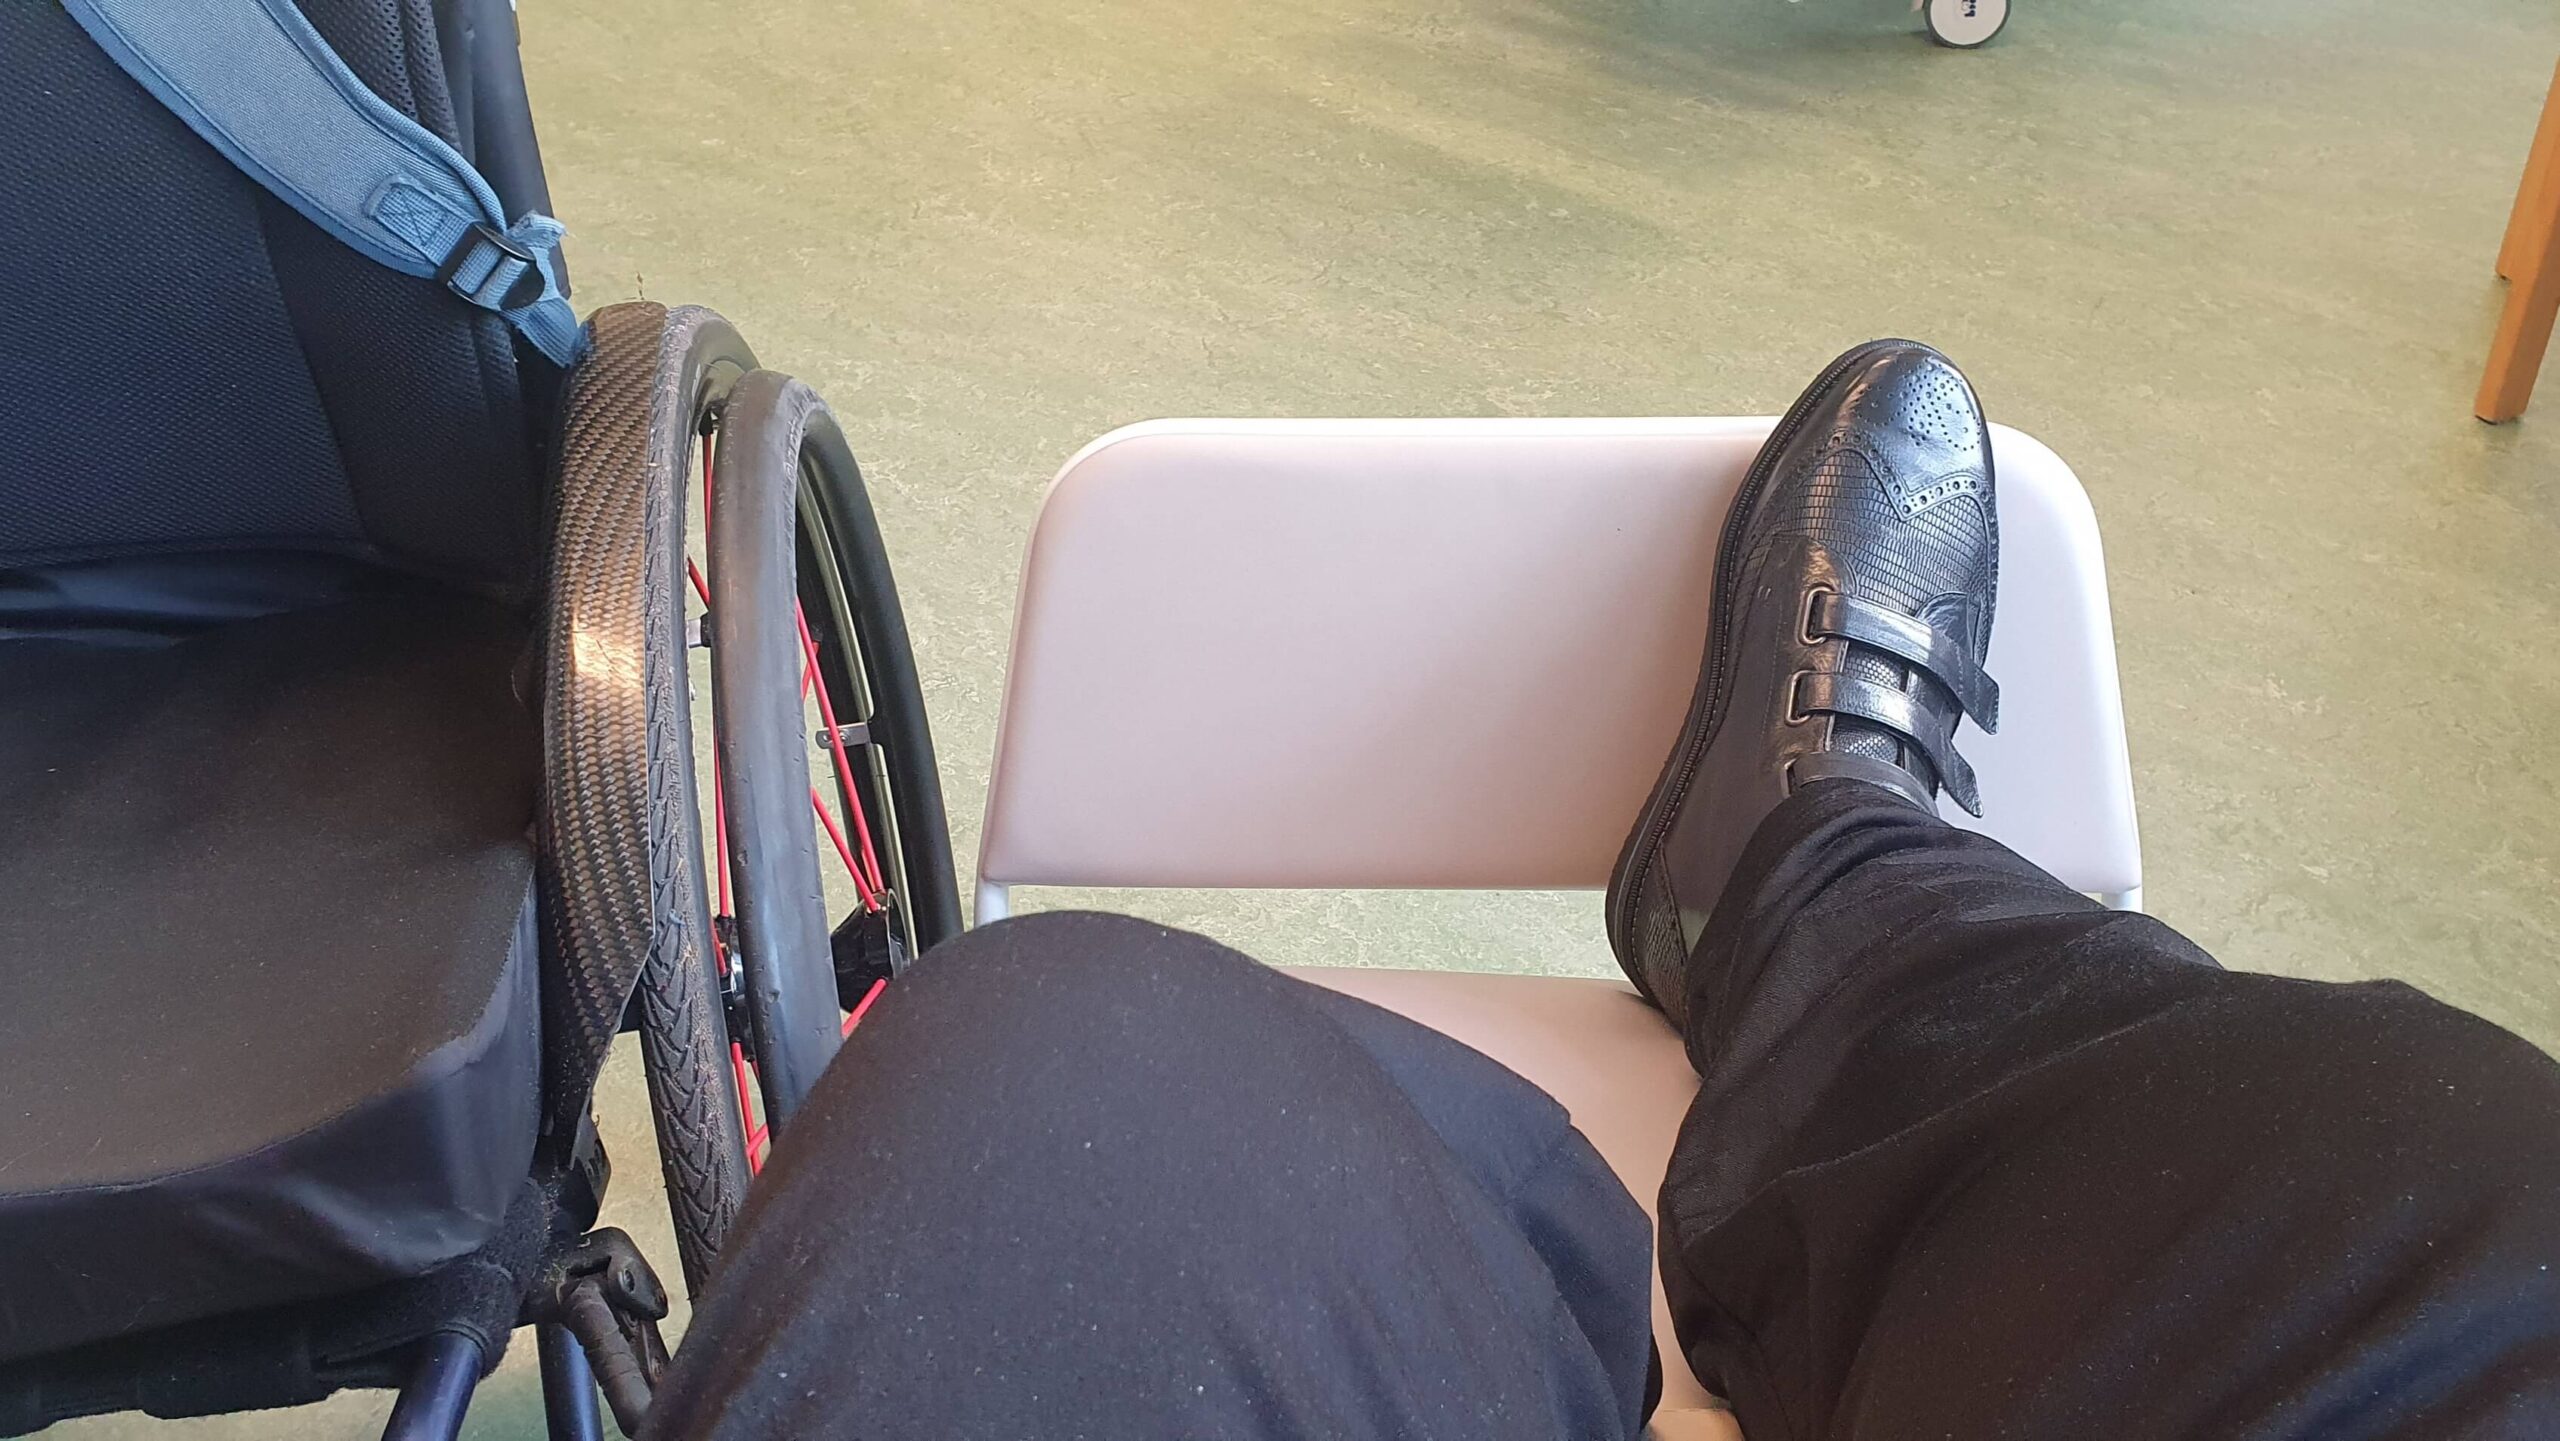 afbeelding behorend bij de blog over nieuwe ervaringen na amputatie met links een rolstoel met daarnaast een man in een ziekenhuis stoel met een geamputeerd linker onderbeen en rechts een voet met orthopedische schoen